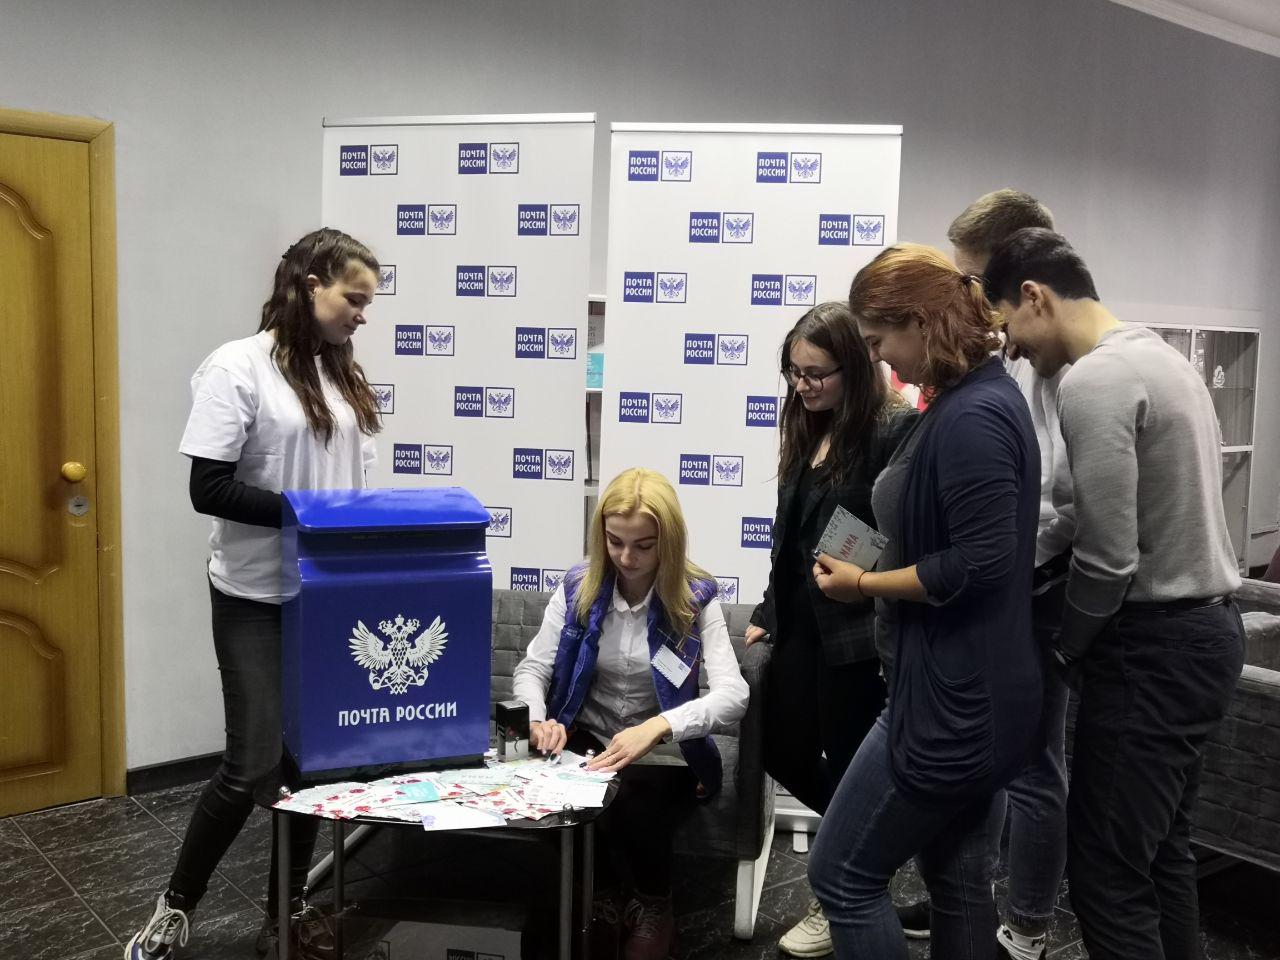 Мамы ярославских студентов получат к празднику открытки по почте